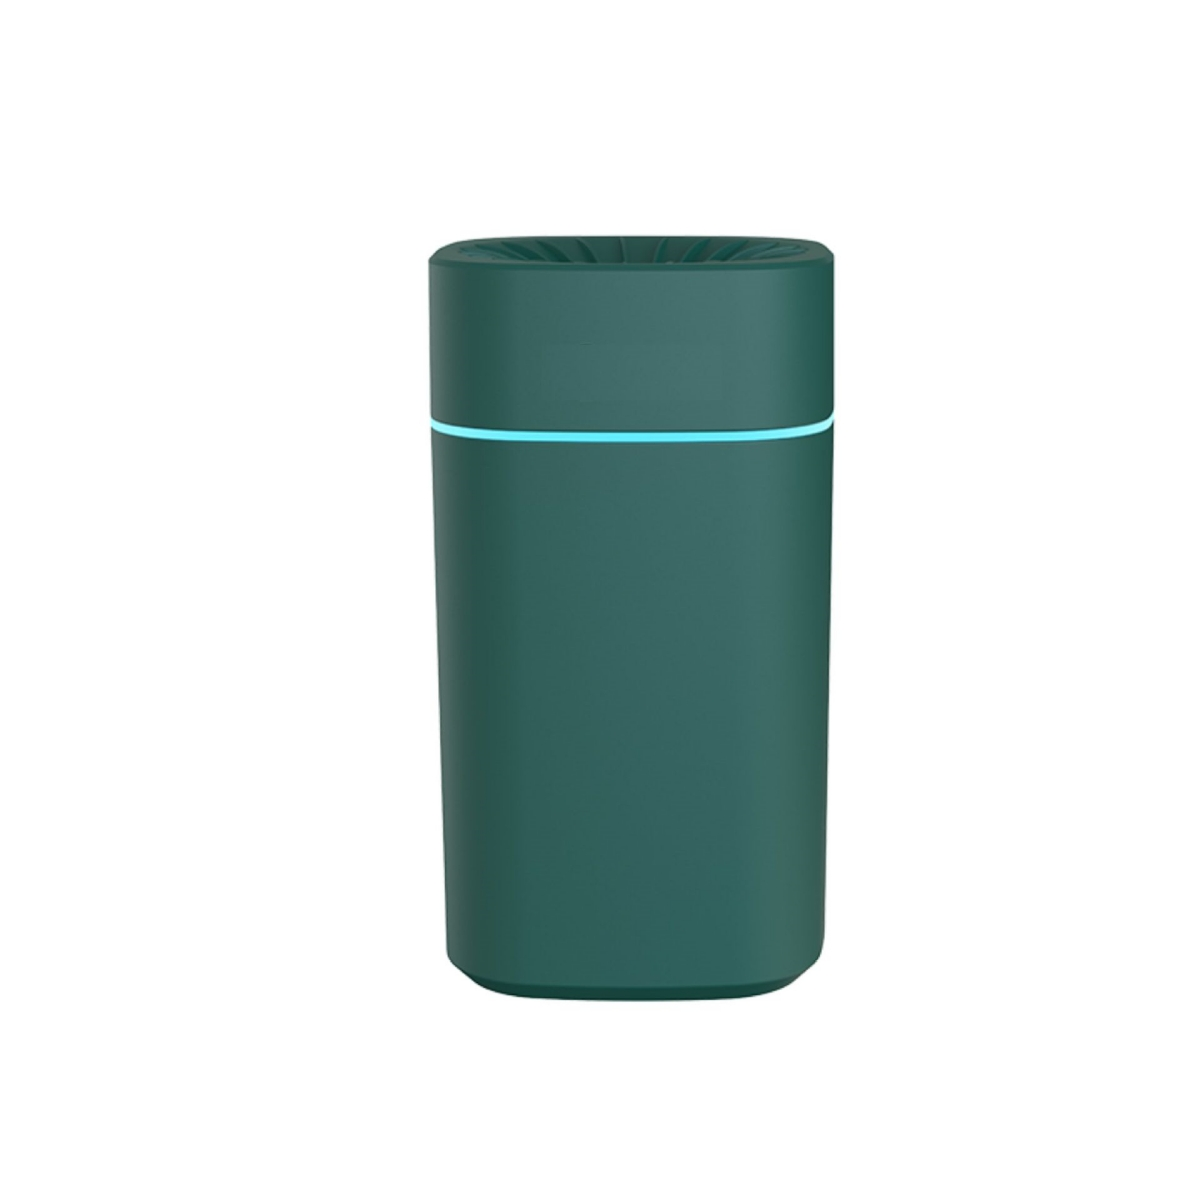 SHAOKE Magischer Luftbefeuchter: Stimmungslicht, Grün Aromatherapie, 30 Kompakt m²) (Raumgröße: Luftbefeuchter